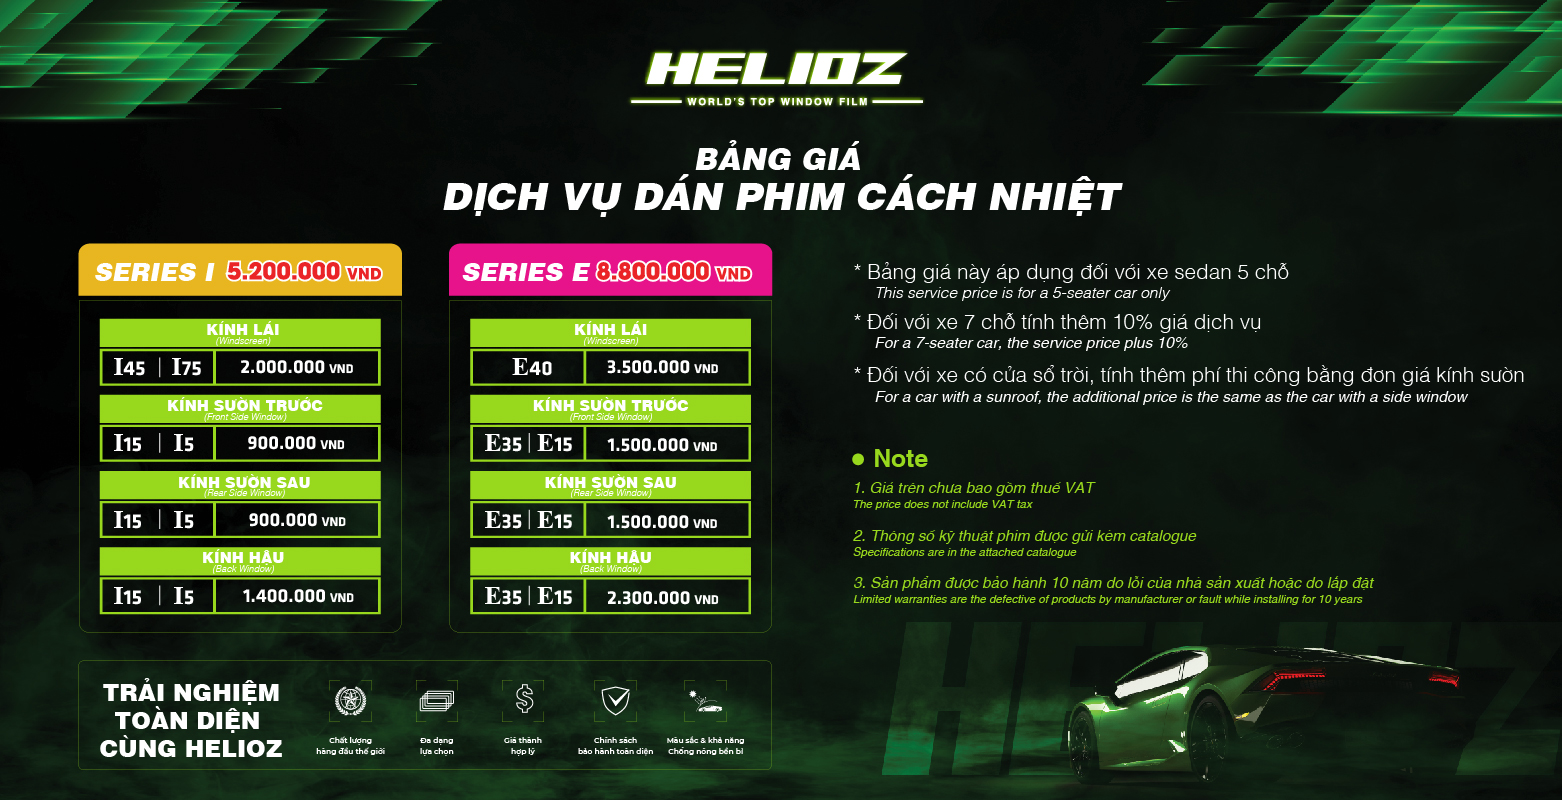 Bảng giá dịch vụ Helioz